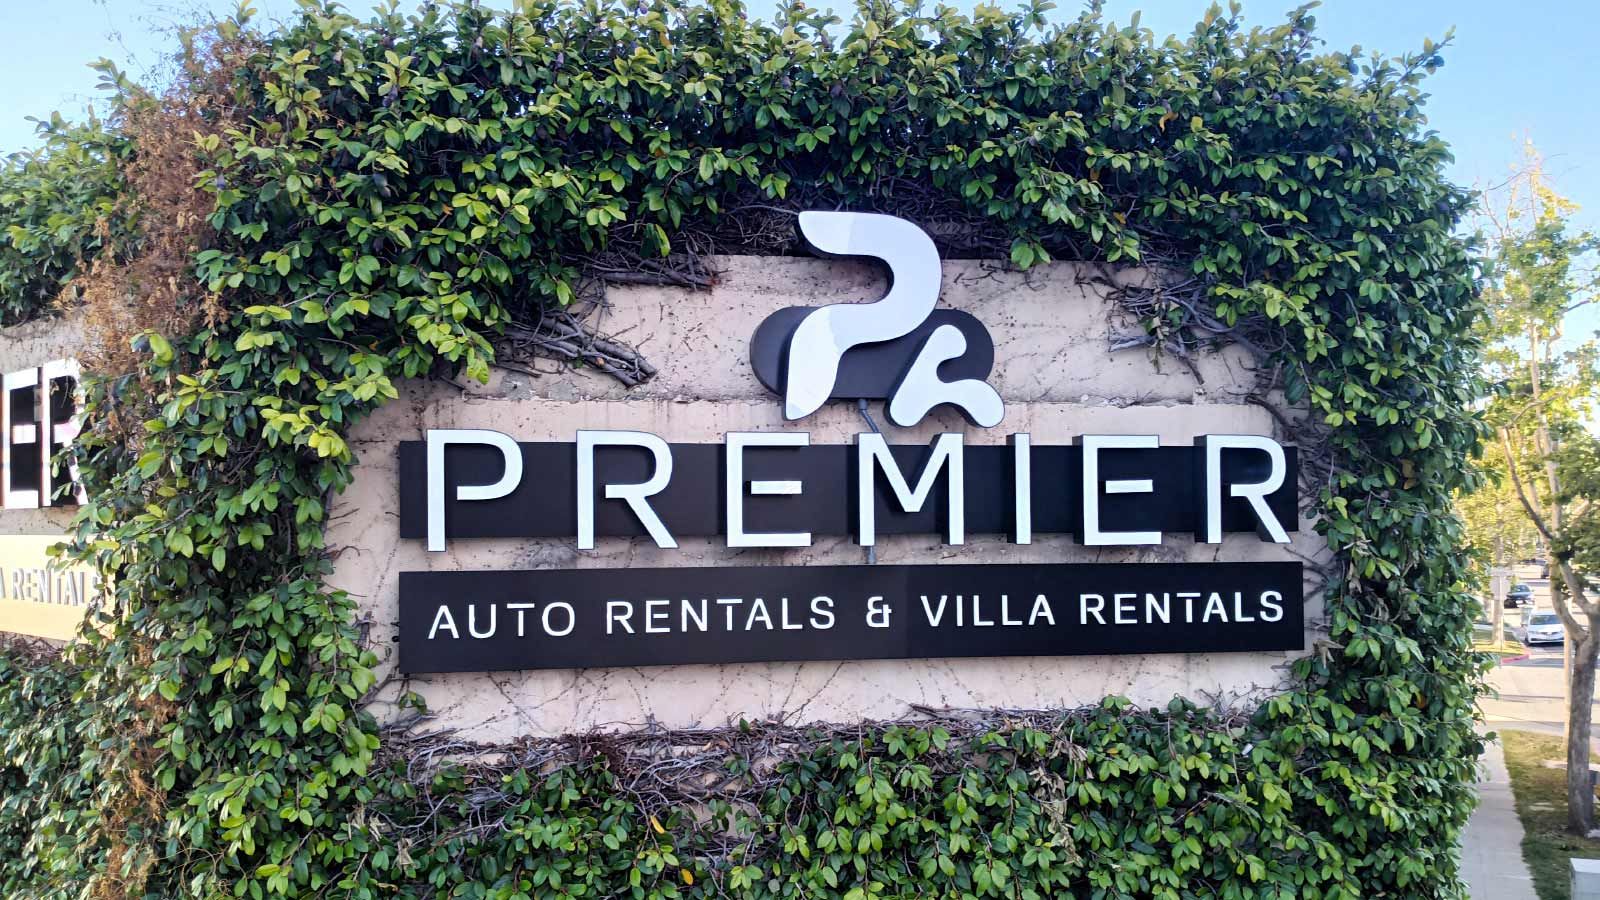 Premier Auto Rentals channel letters